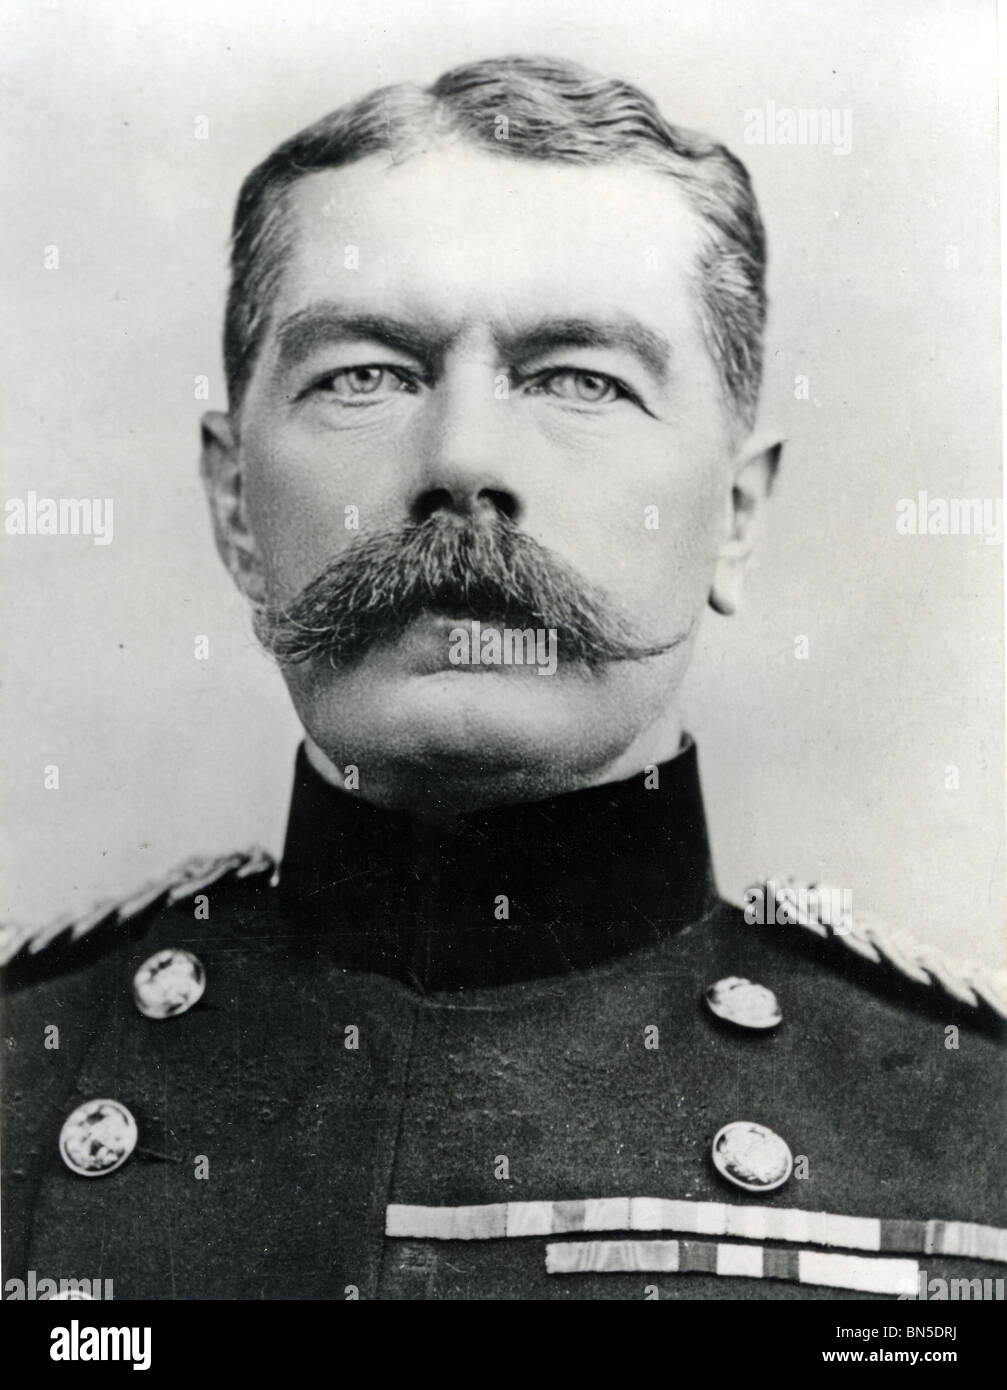 Le Maréchal HORATIO KTCHENER (1850-1916) décoré soldat britannique dont le visage apparaît sur une série d'affiches de la WW1 Banque D'Images